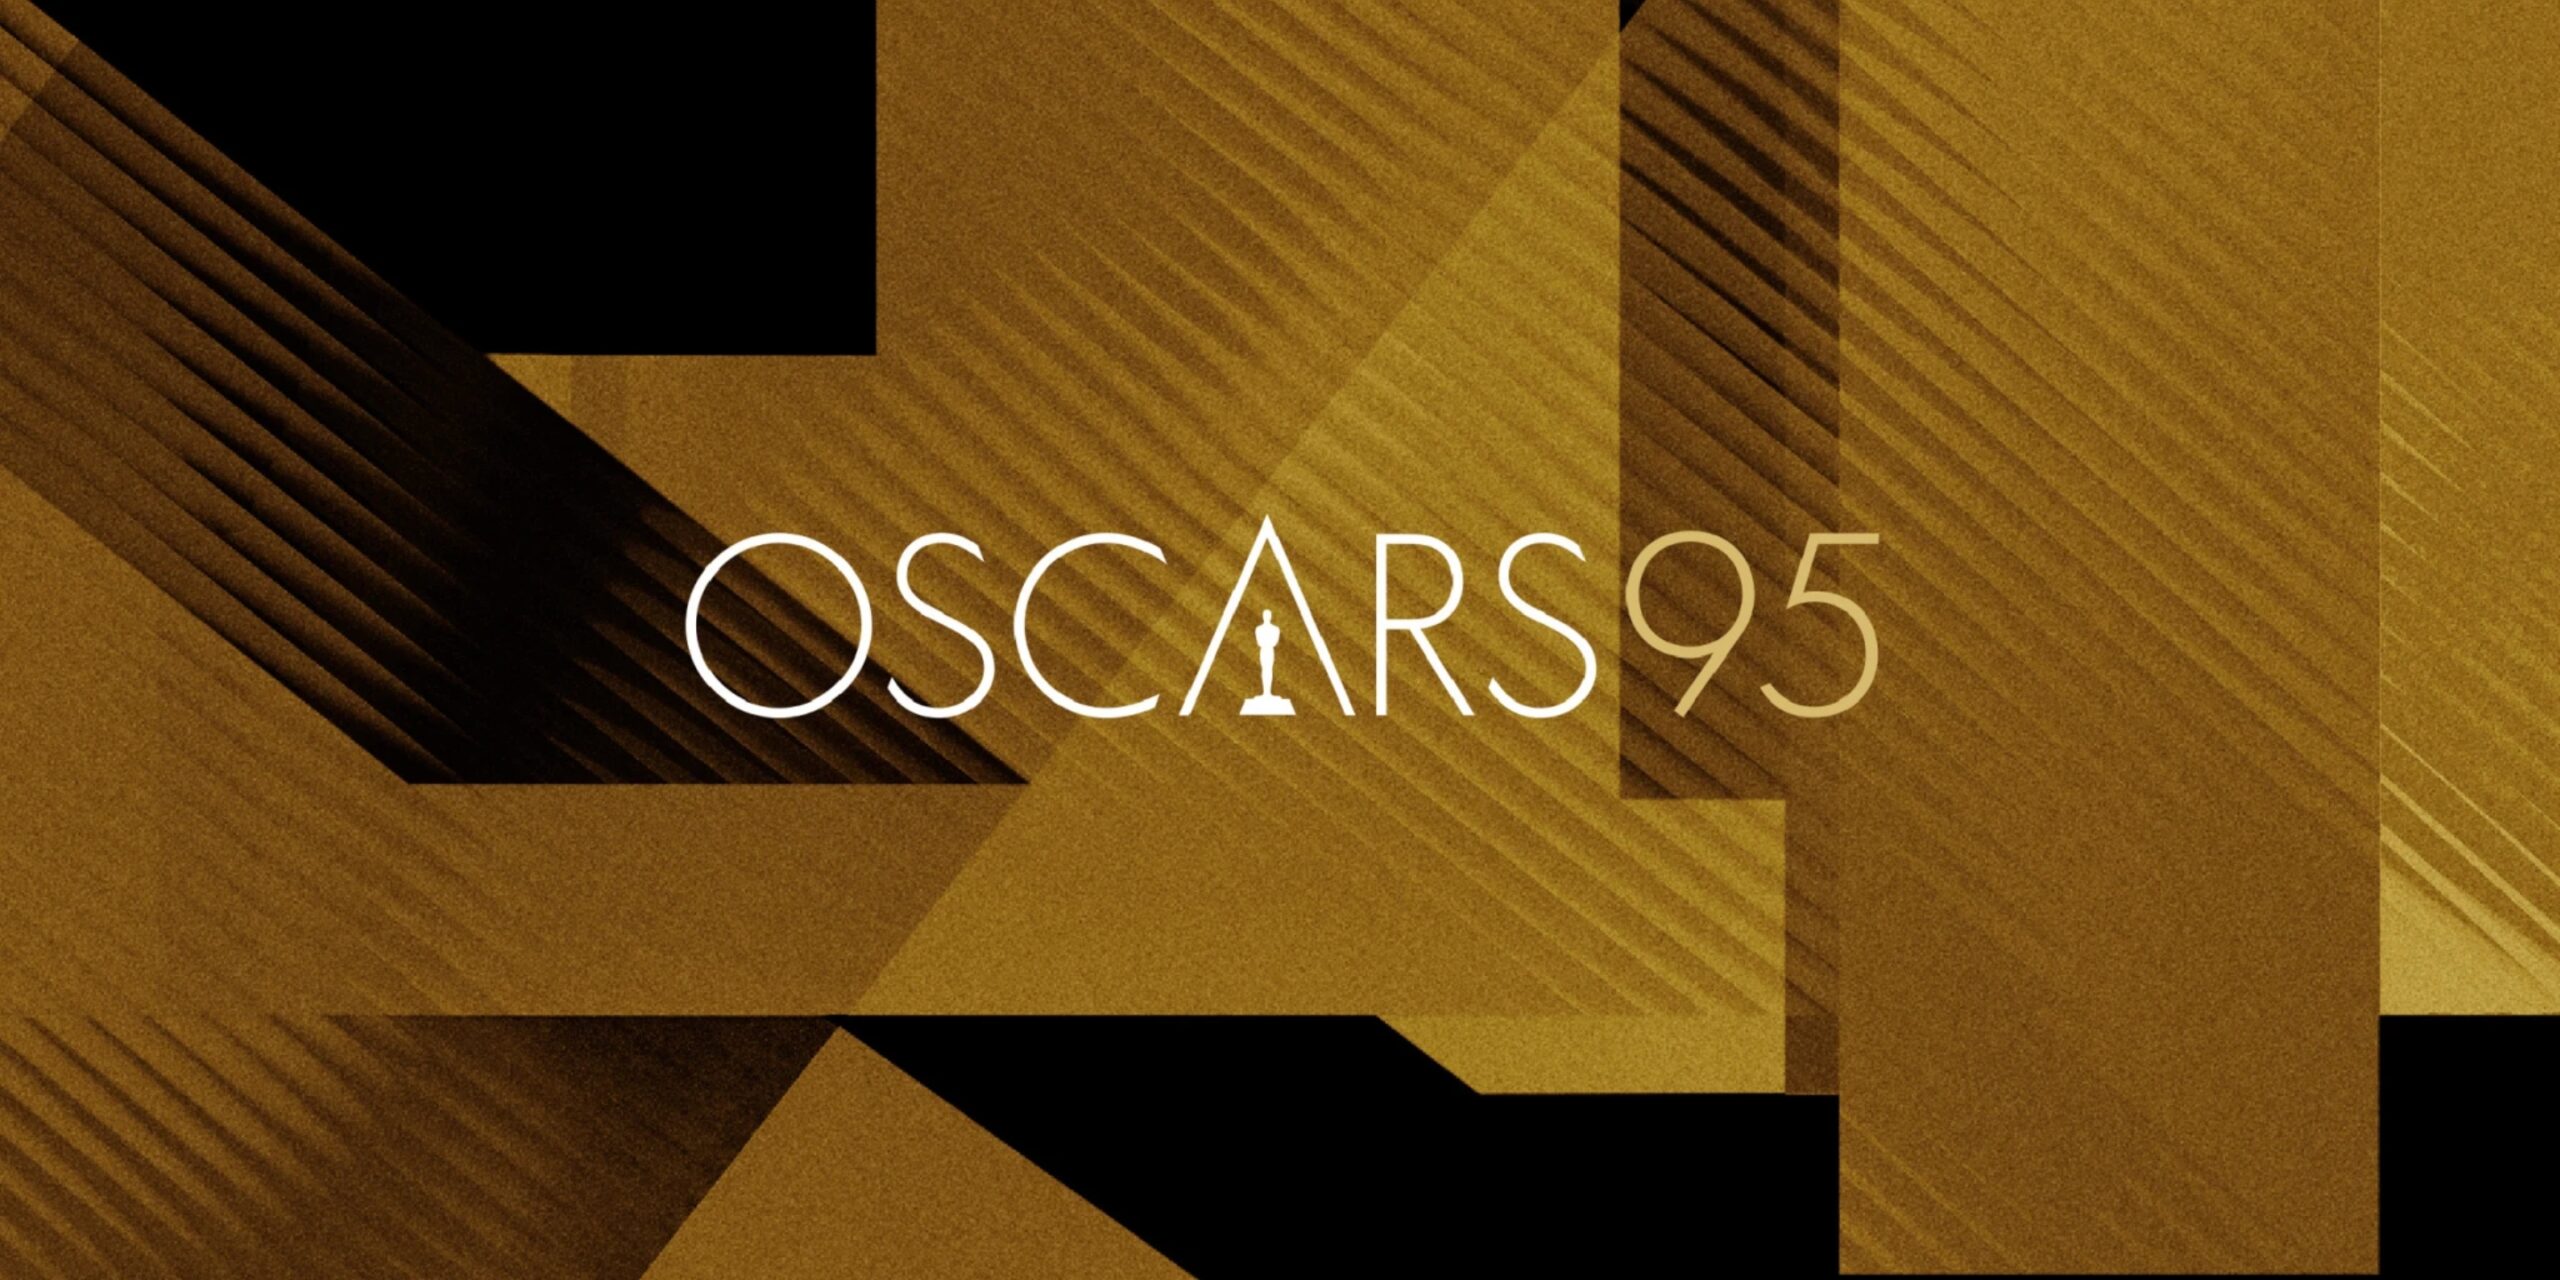 Oscars 95 2023